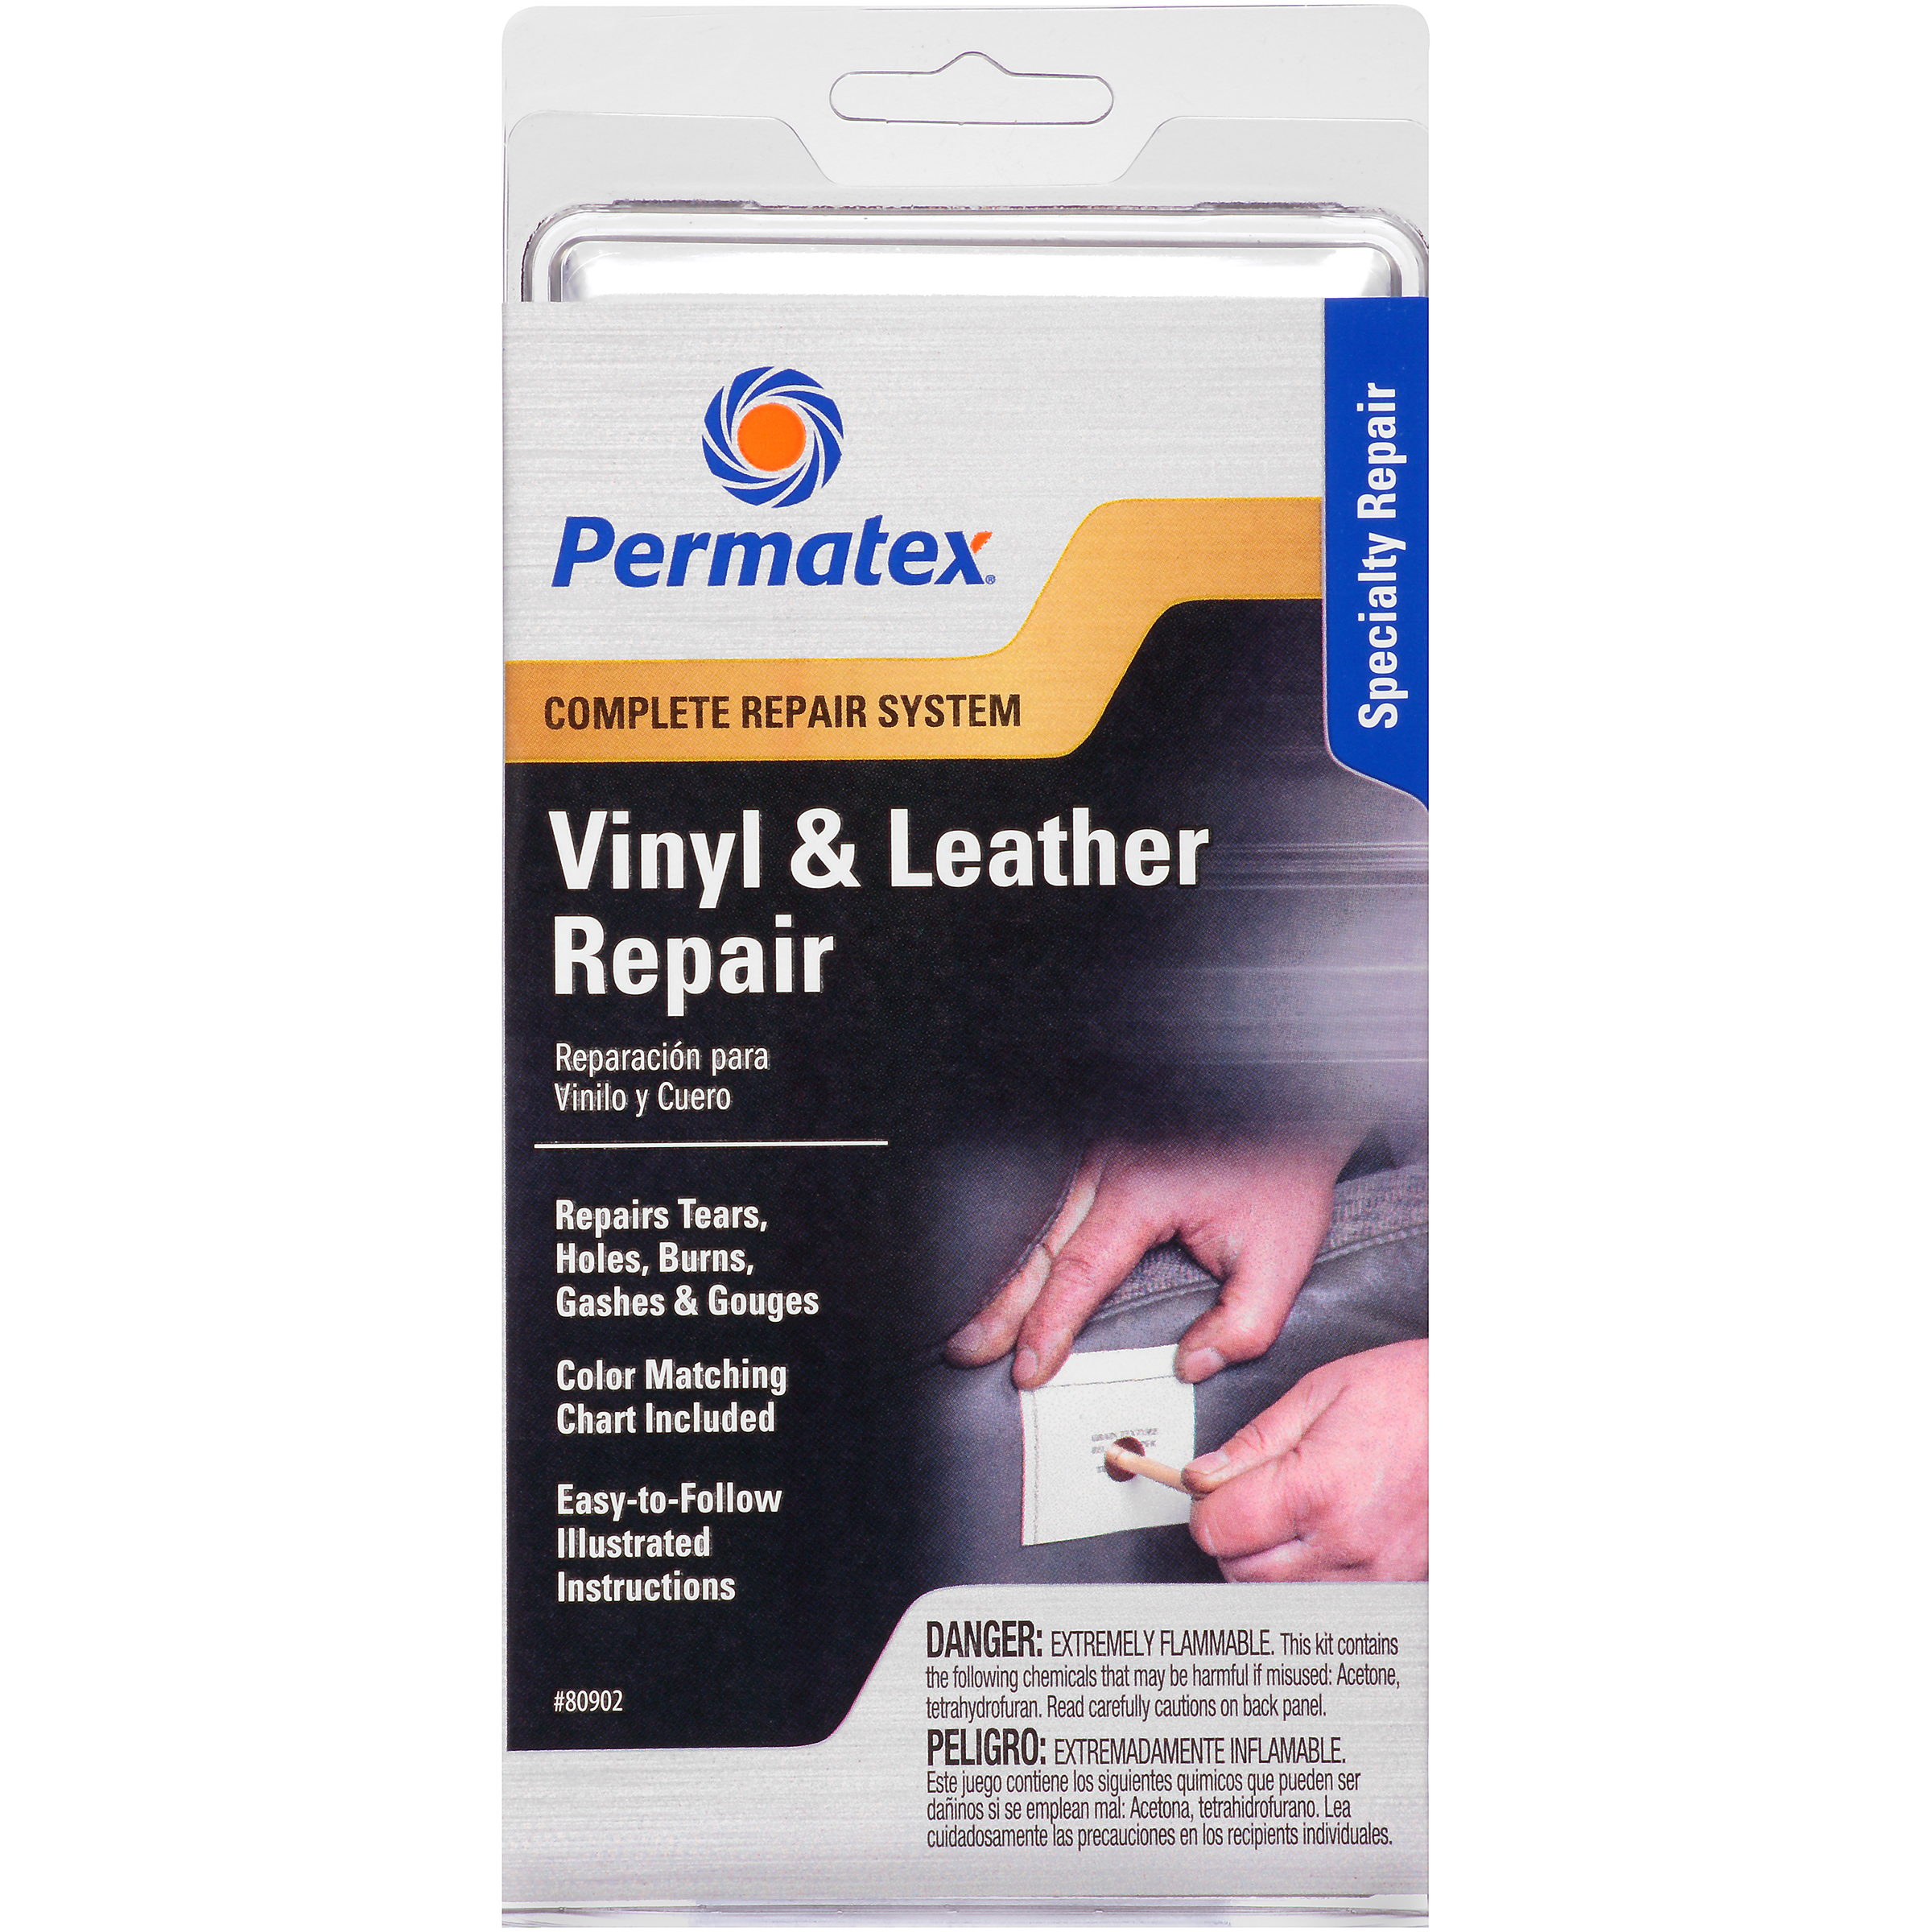 Permatex Vinyl & Leather Repair Kit